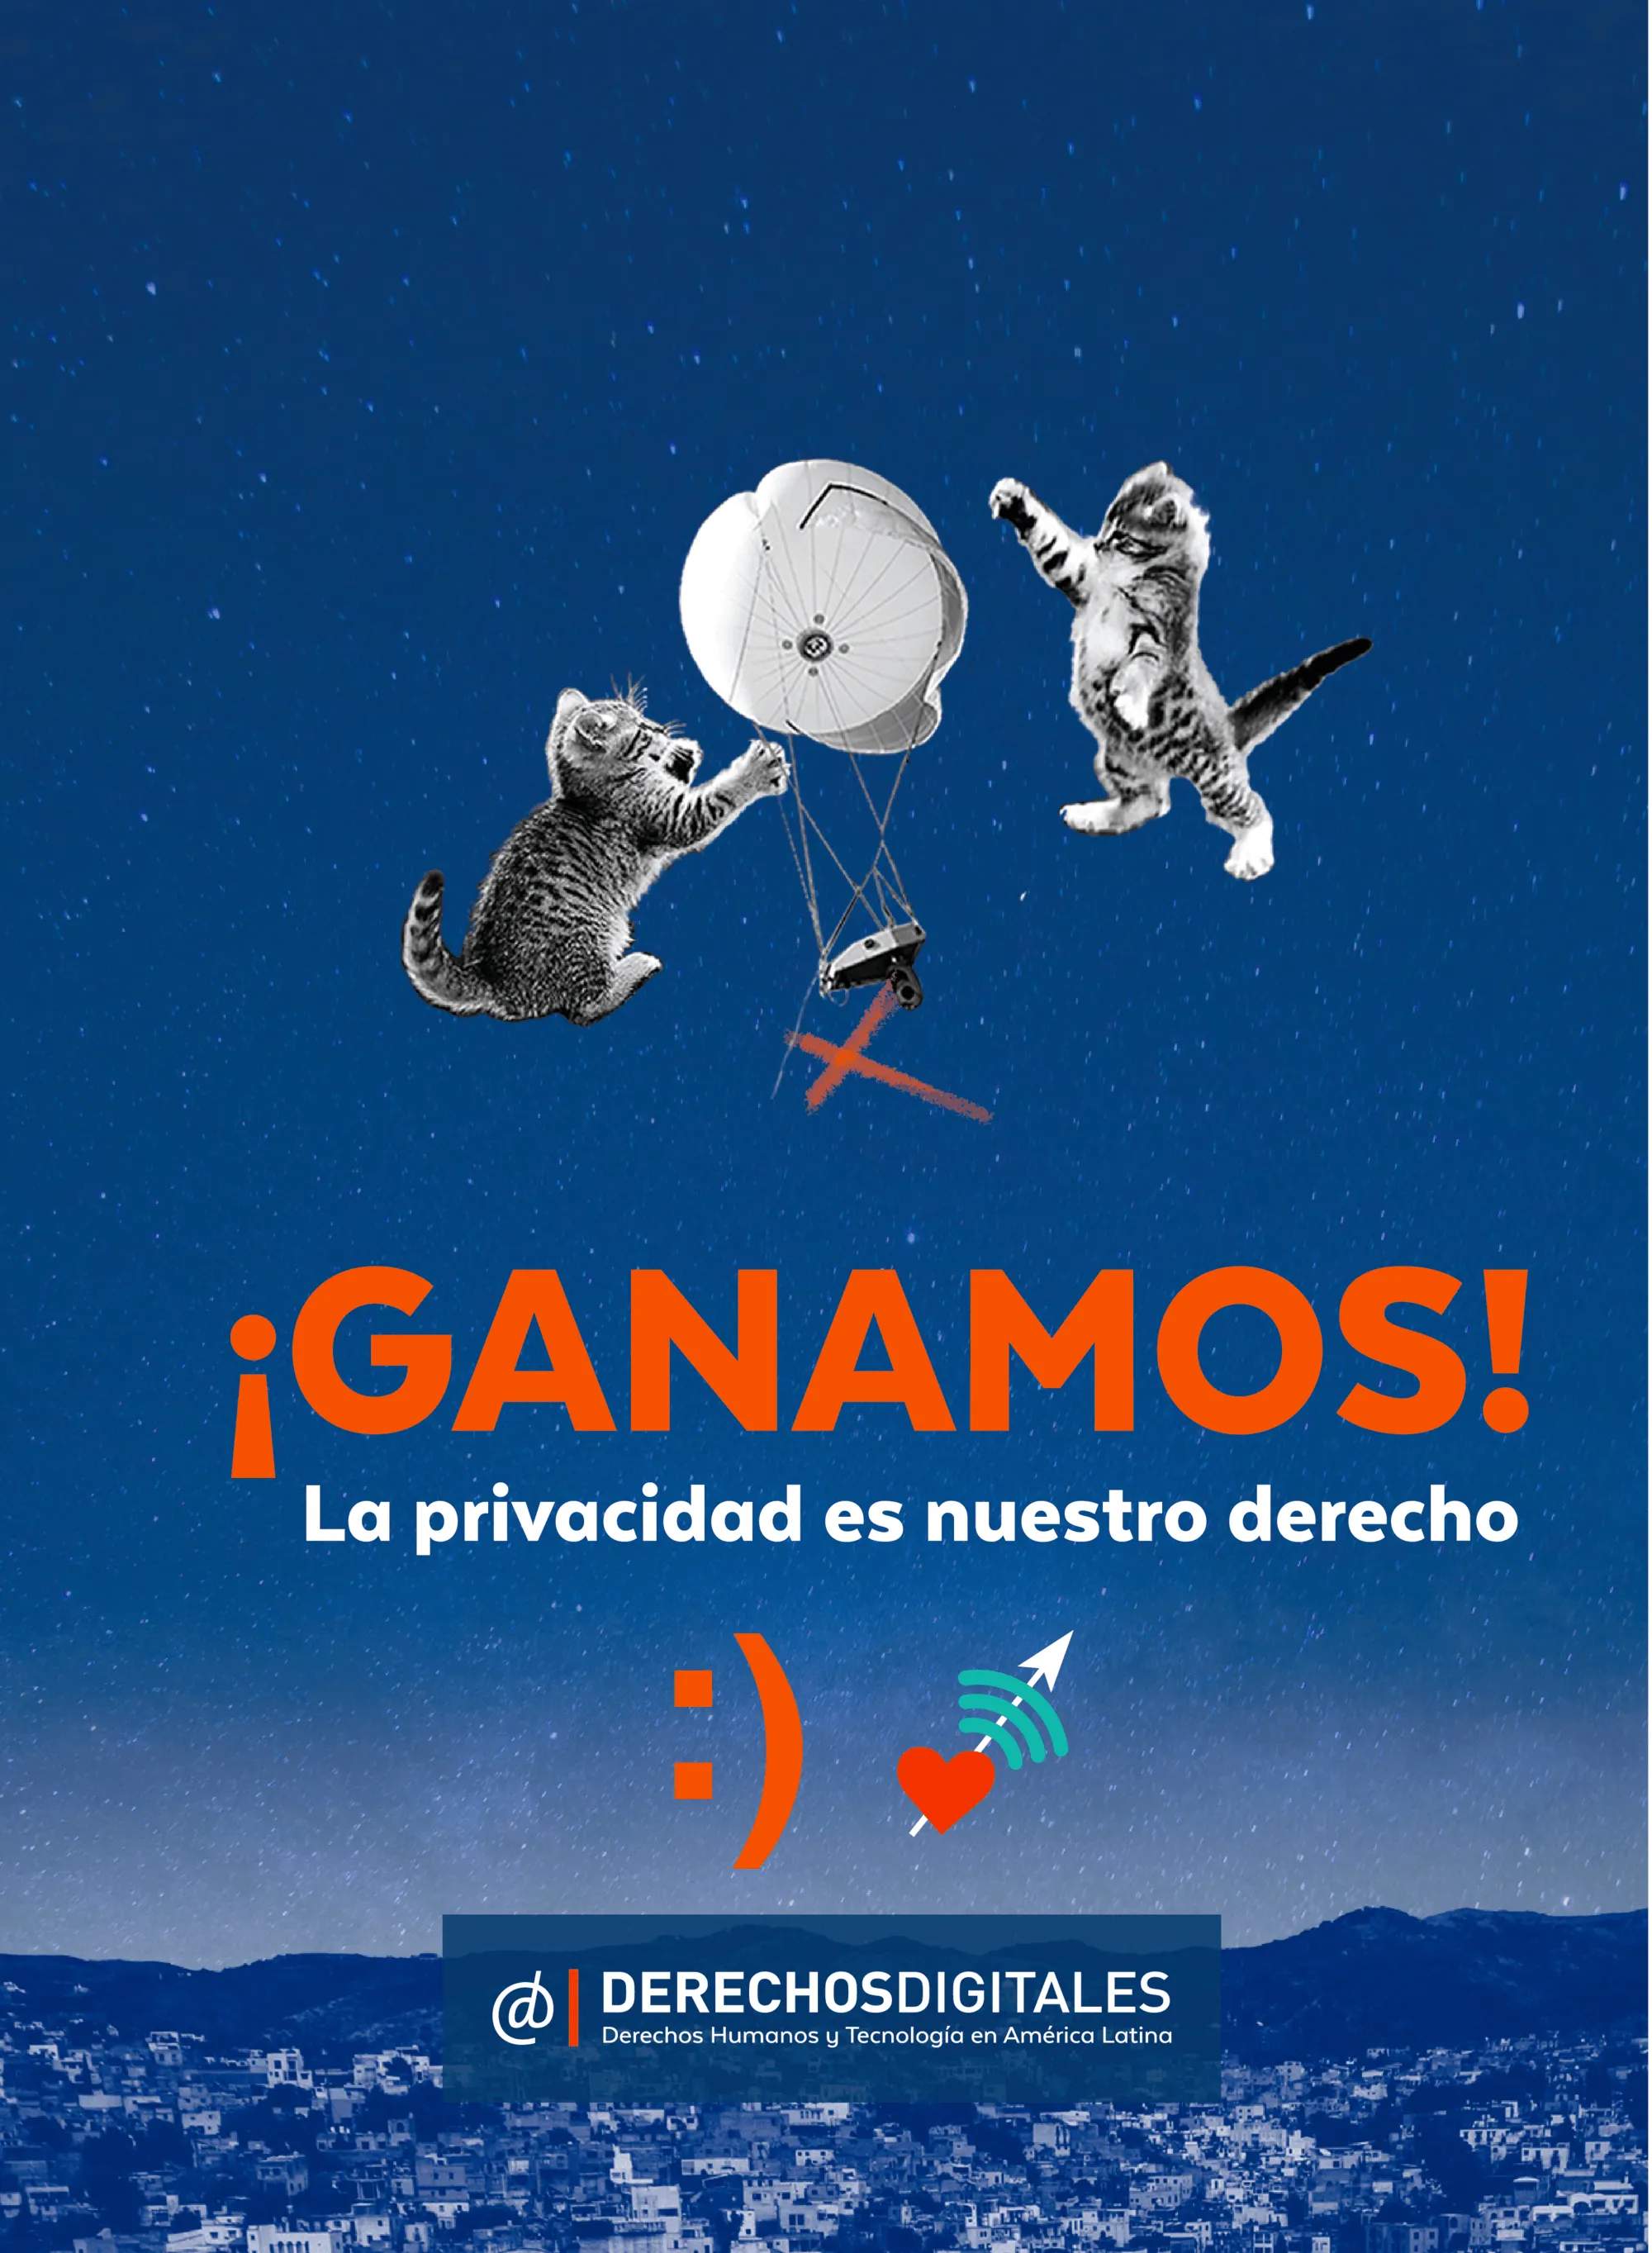 Cartel de la campaña de la organización chilena Derechos Digitales, 07/03/2016.